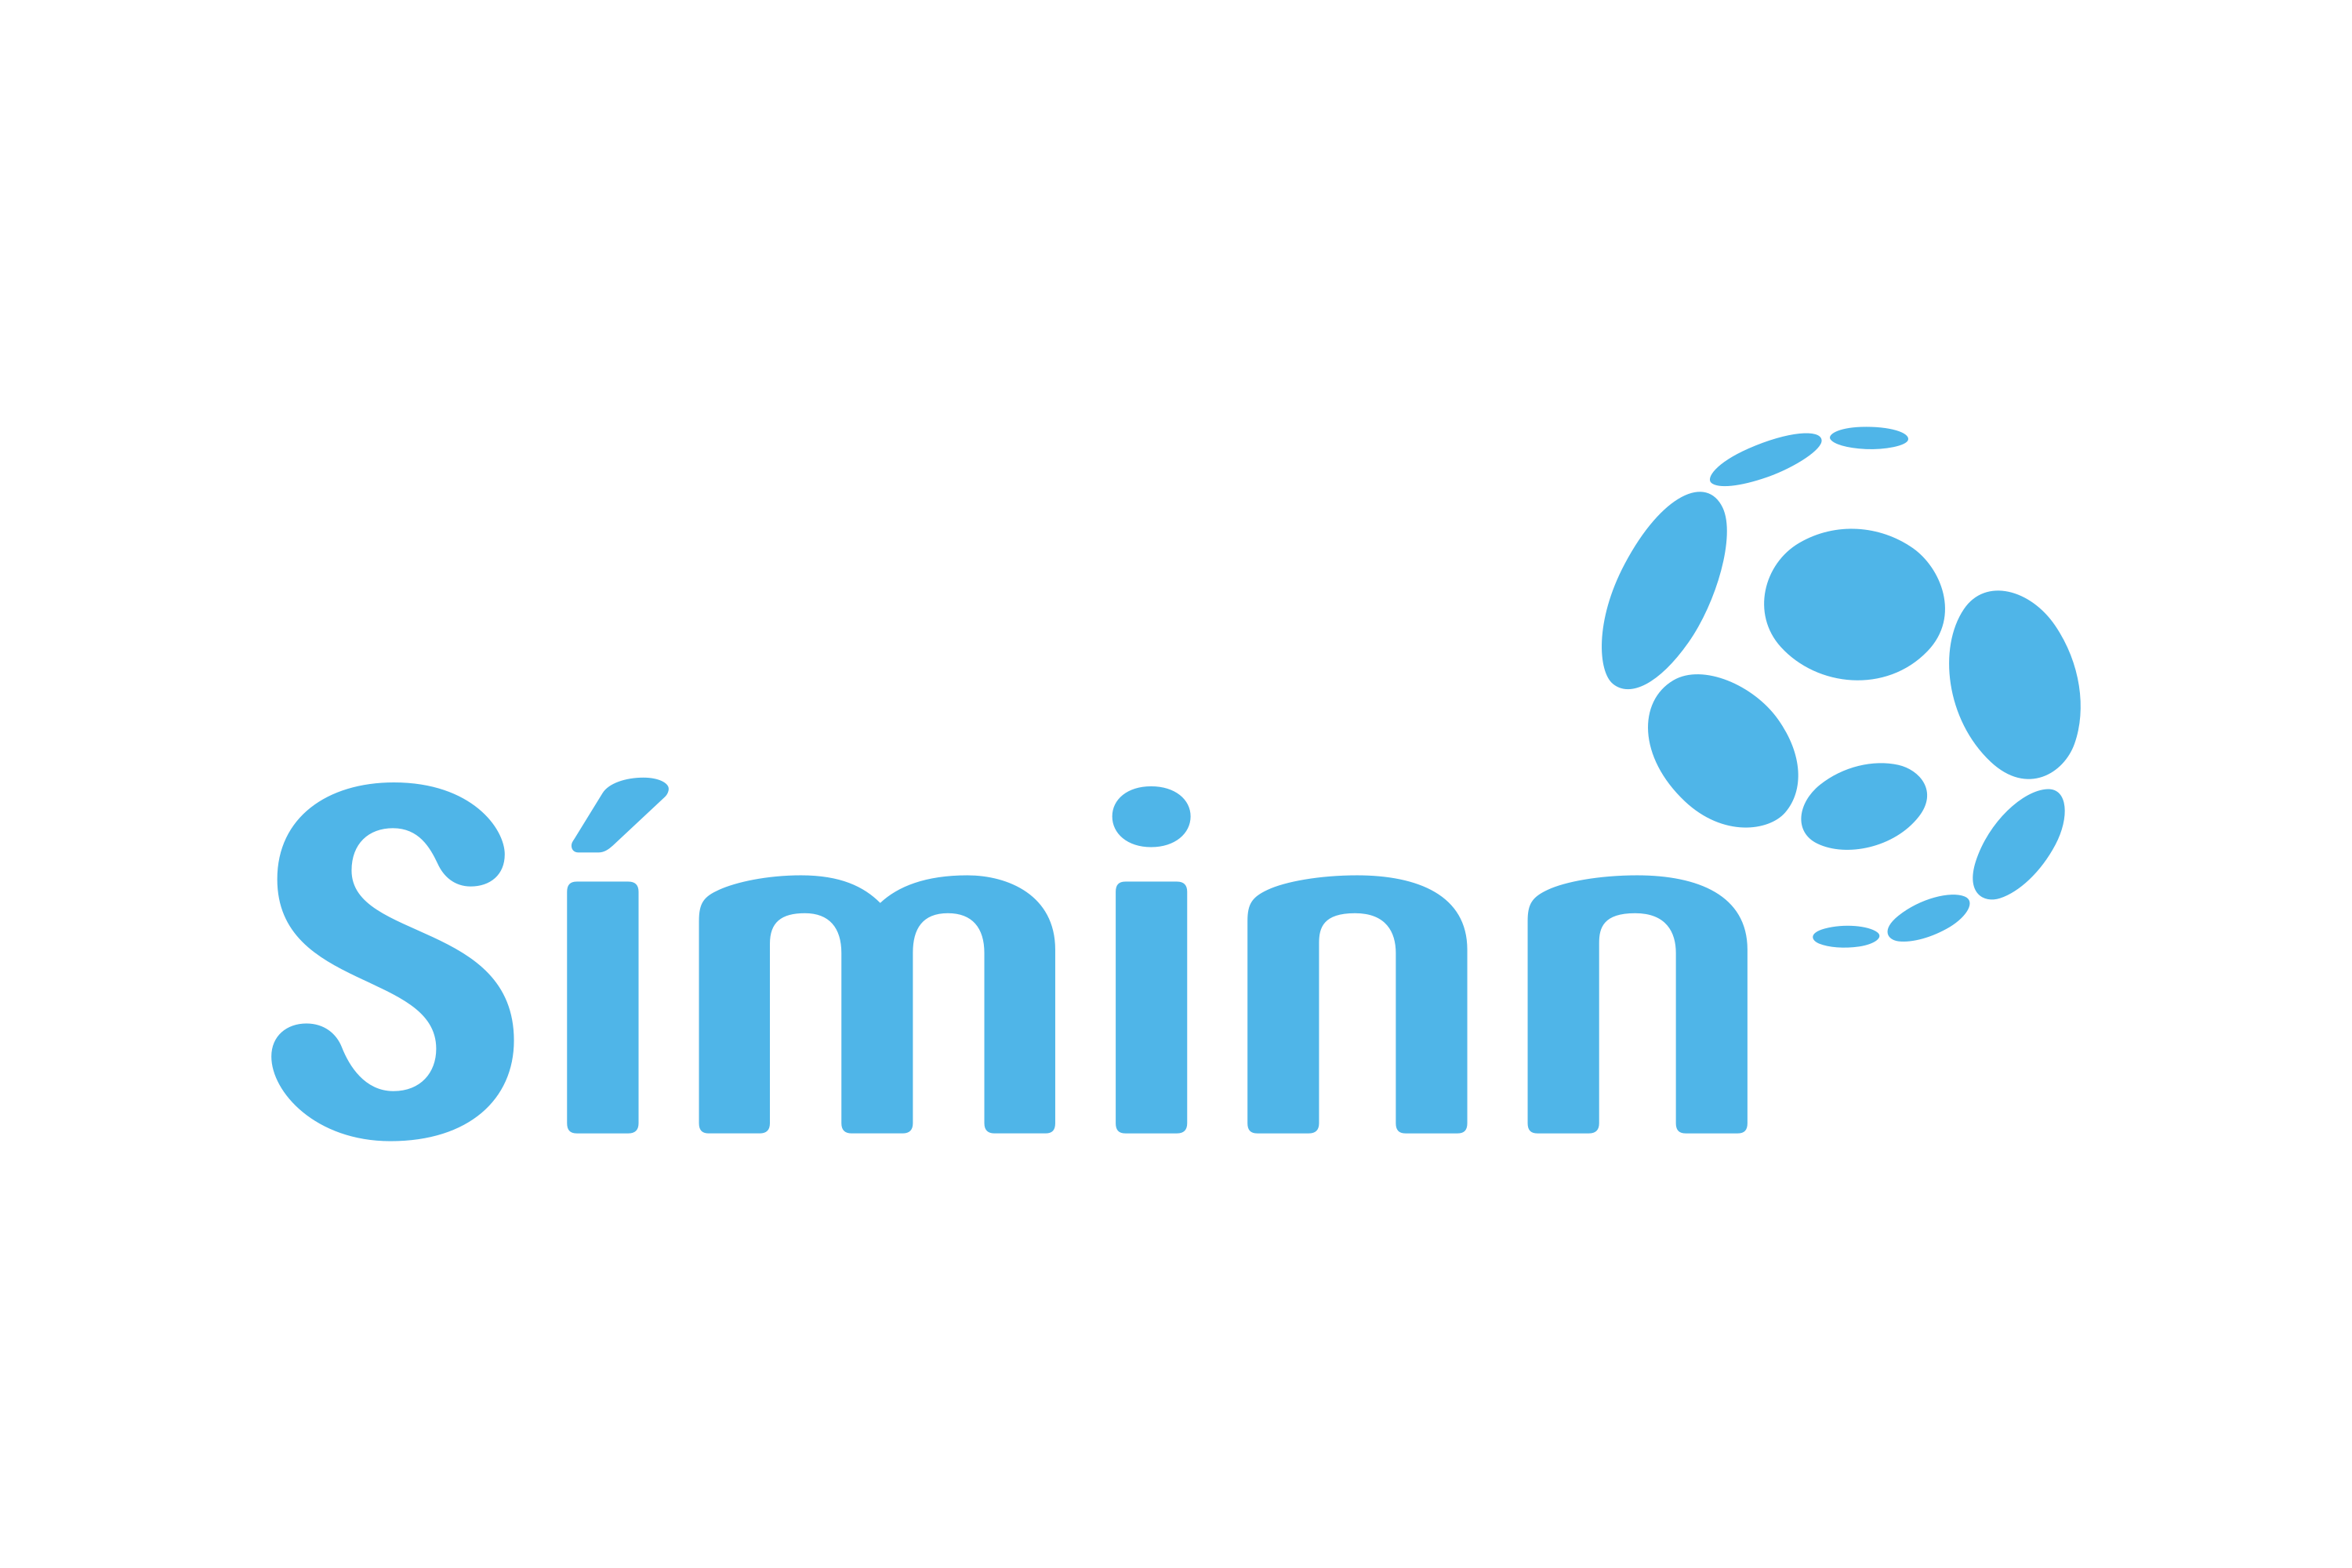 Download Síminn Logo in SVG Vector or PNG File Format - Logo.wine